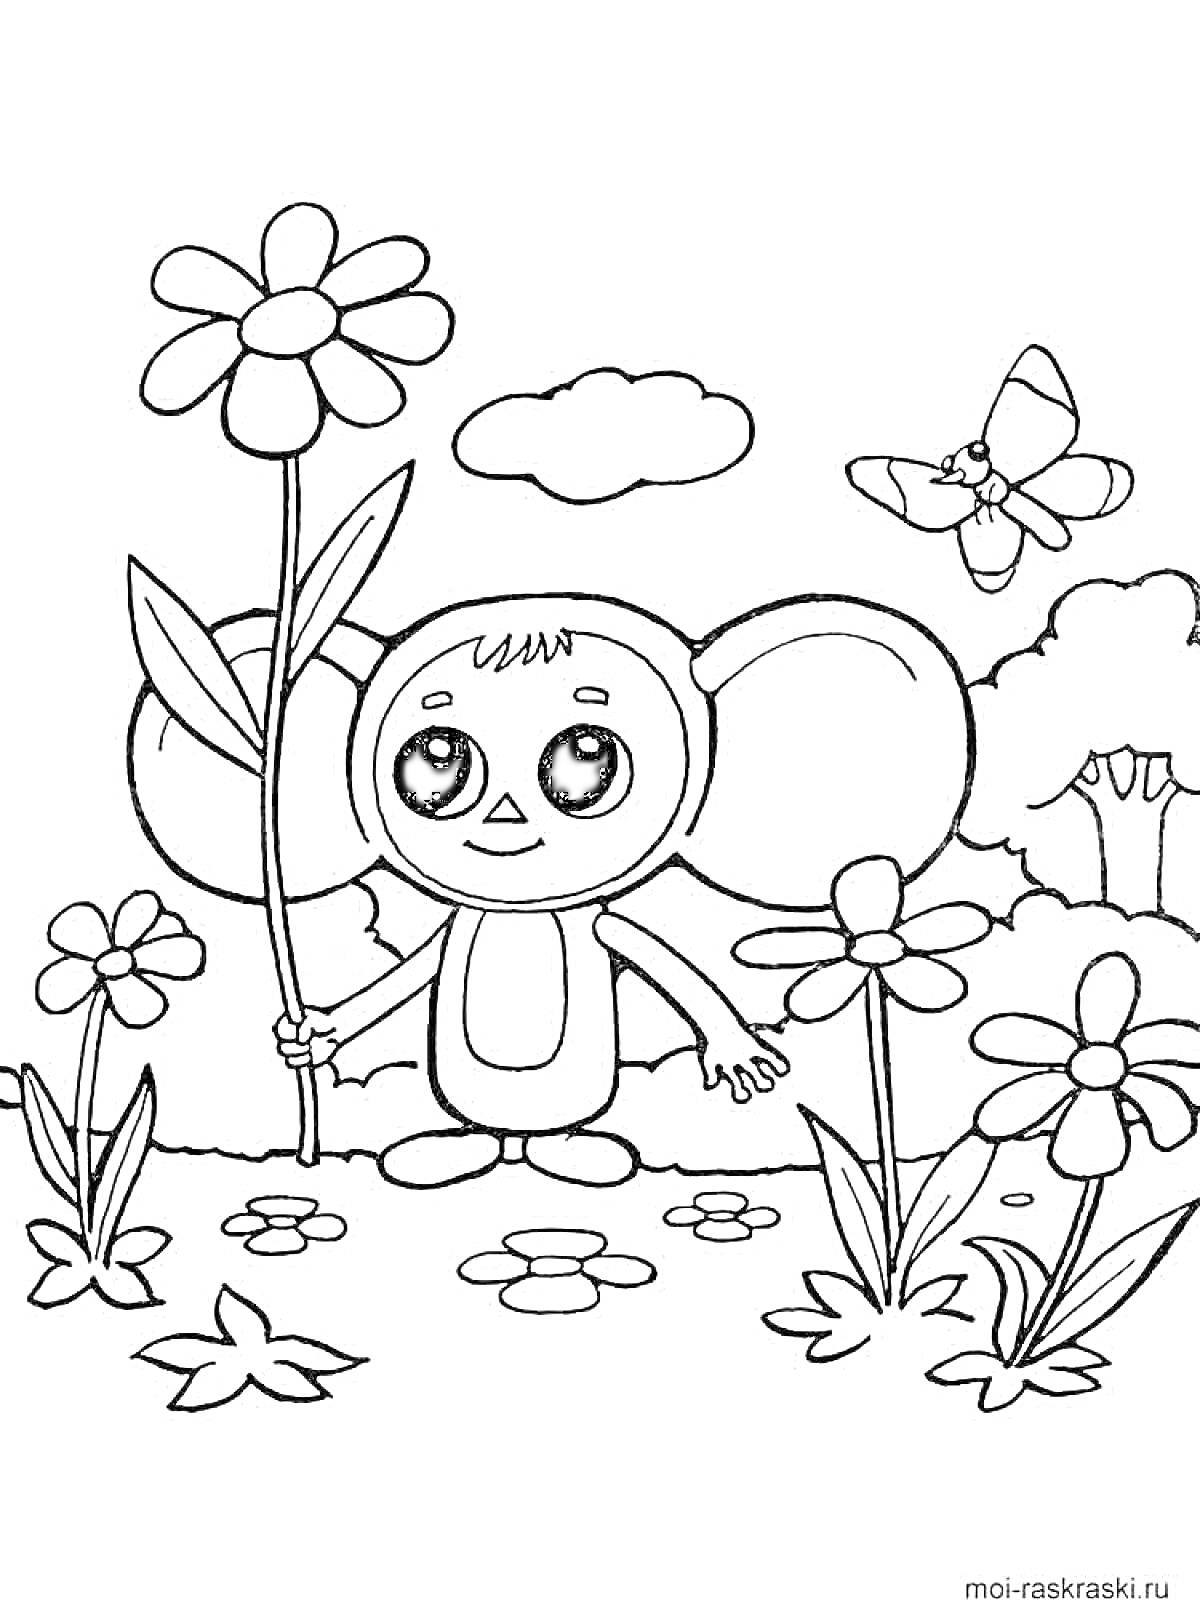 Раскраска Чебурашка с цветами и бабочкой